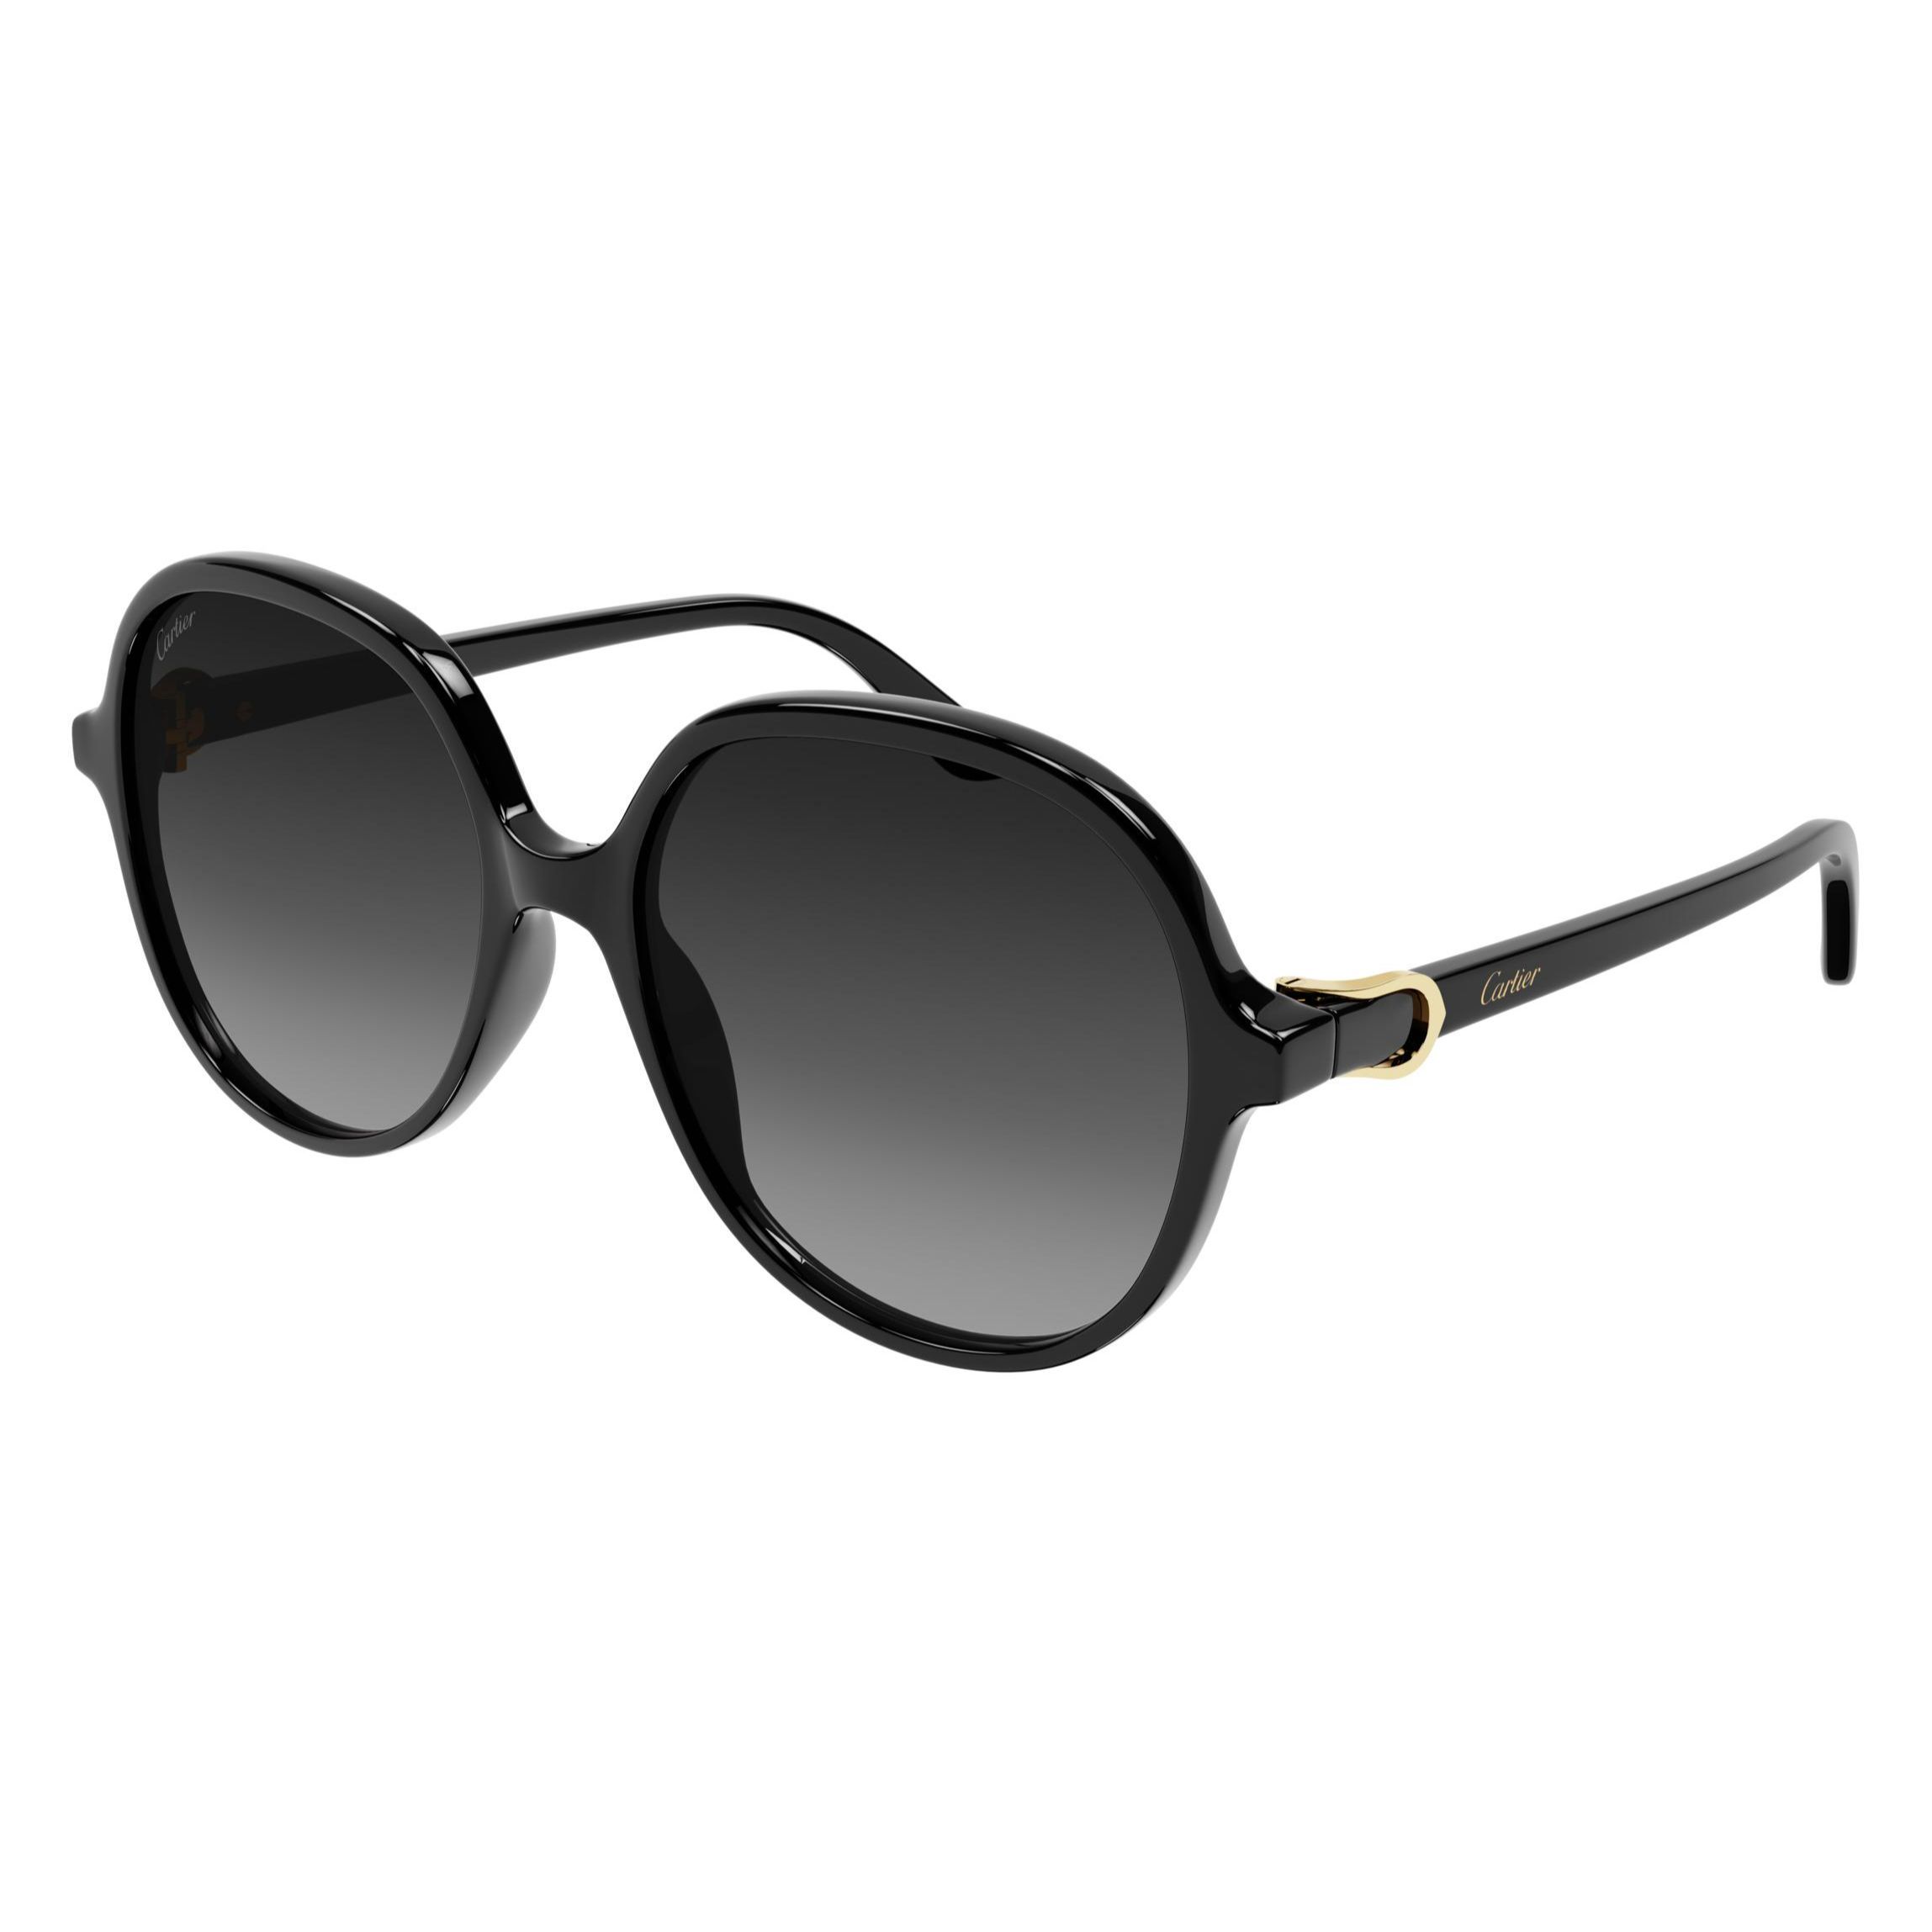 CT0350S Square Sunglasses 1 - size 57